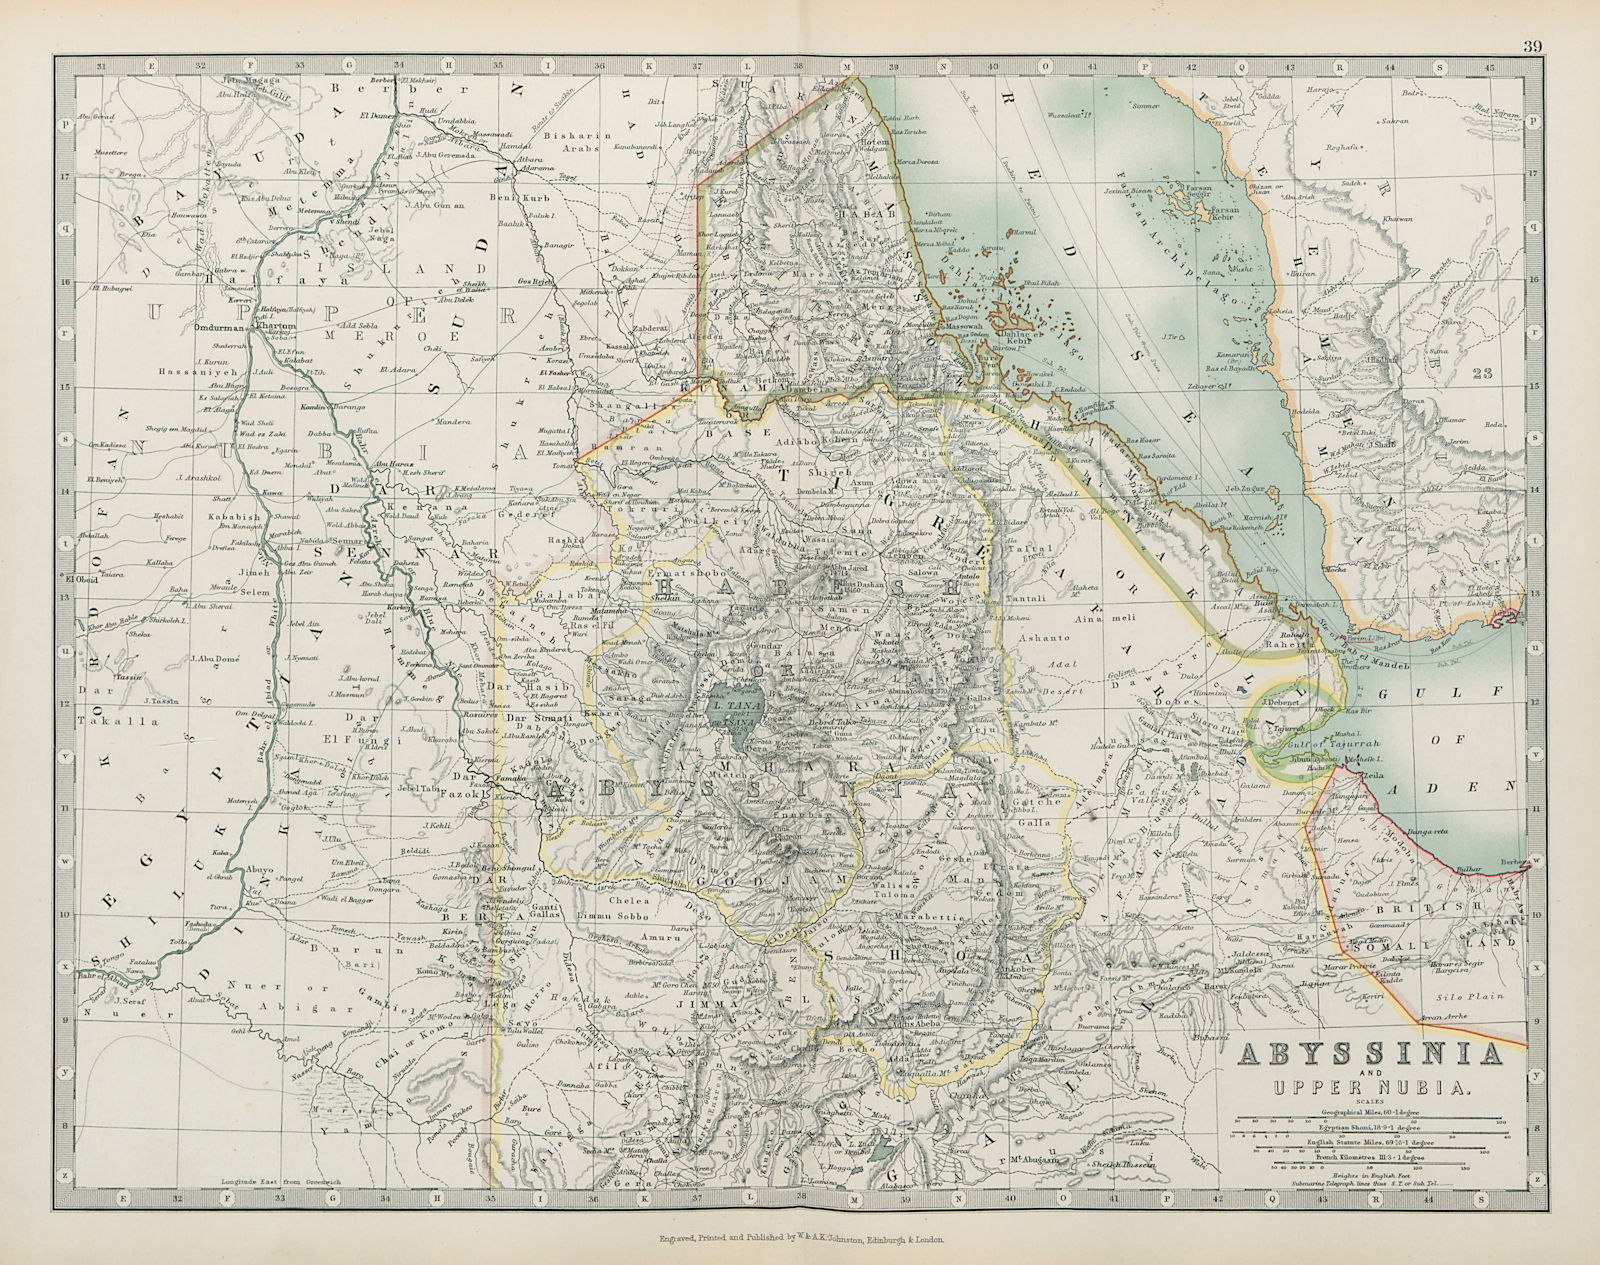 ETHIOPIA Abyssinia Upper Nubia Italian Eritrea JOHNSTON 1901 old antique map